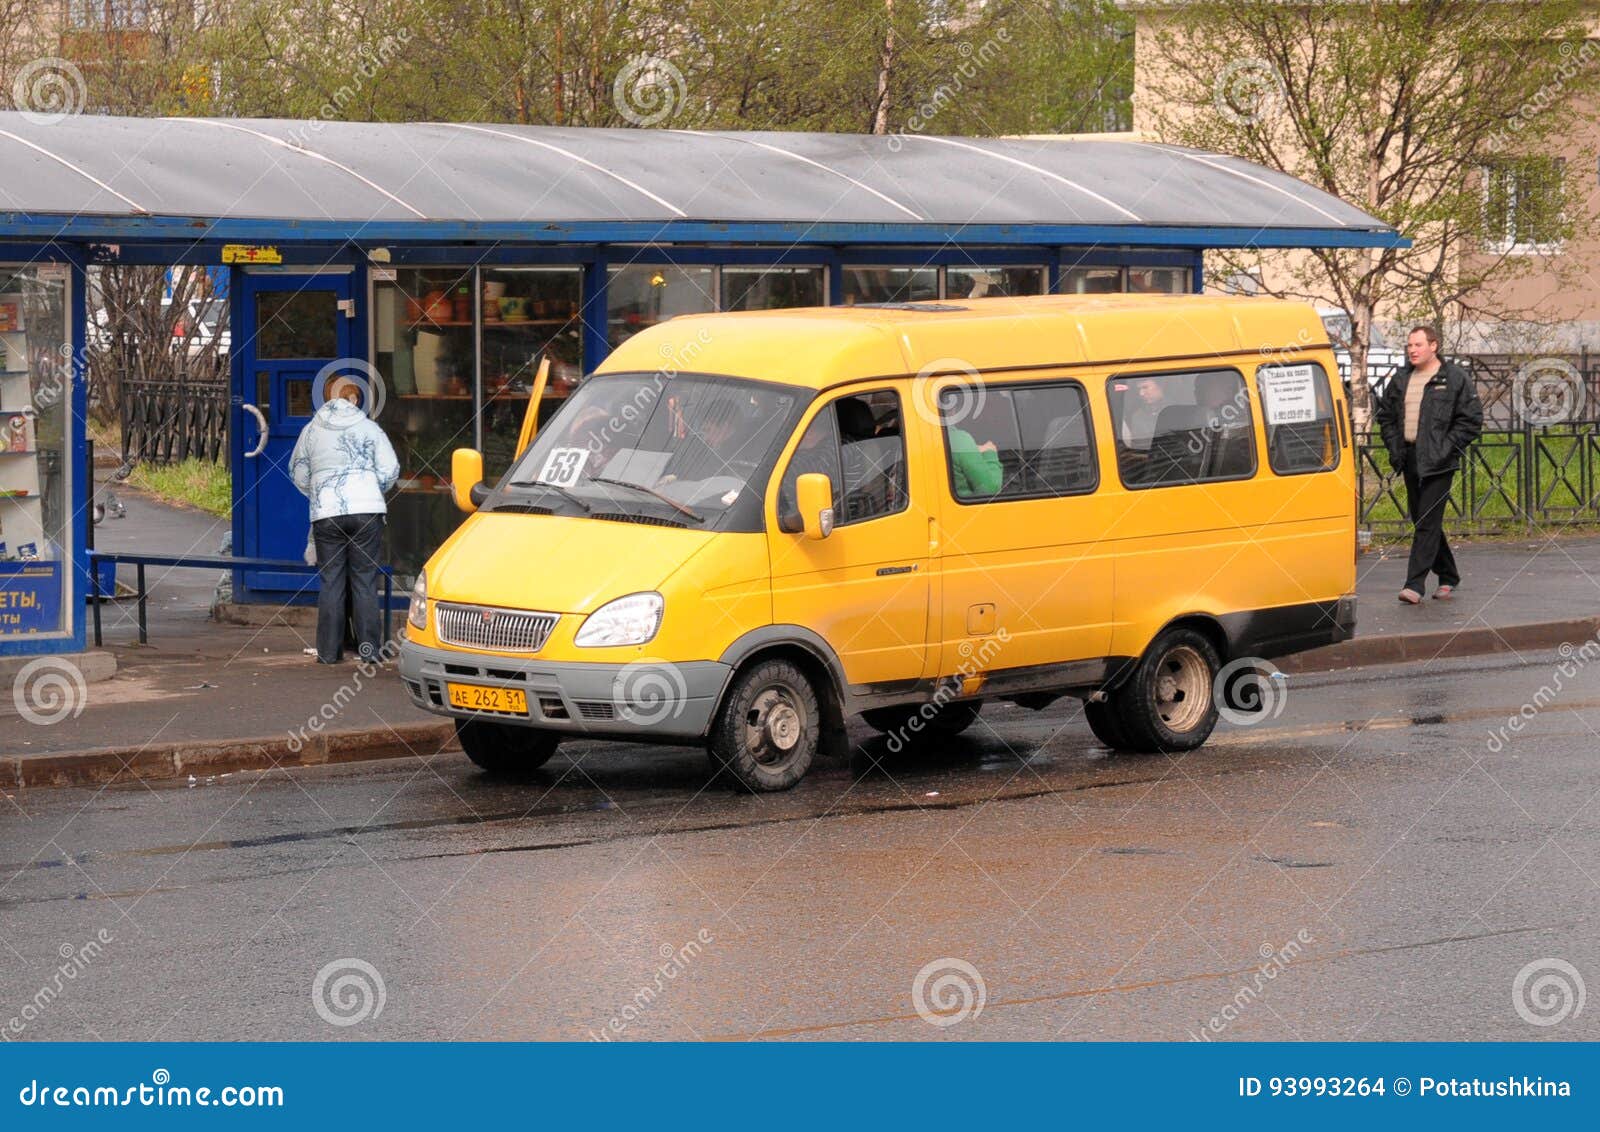 Поездка в маршрутном такси. Микроавтобус желтый. Желтая маршрутка. Маршрутное такси. Оранжевая маршрутка.